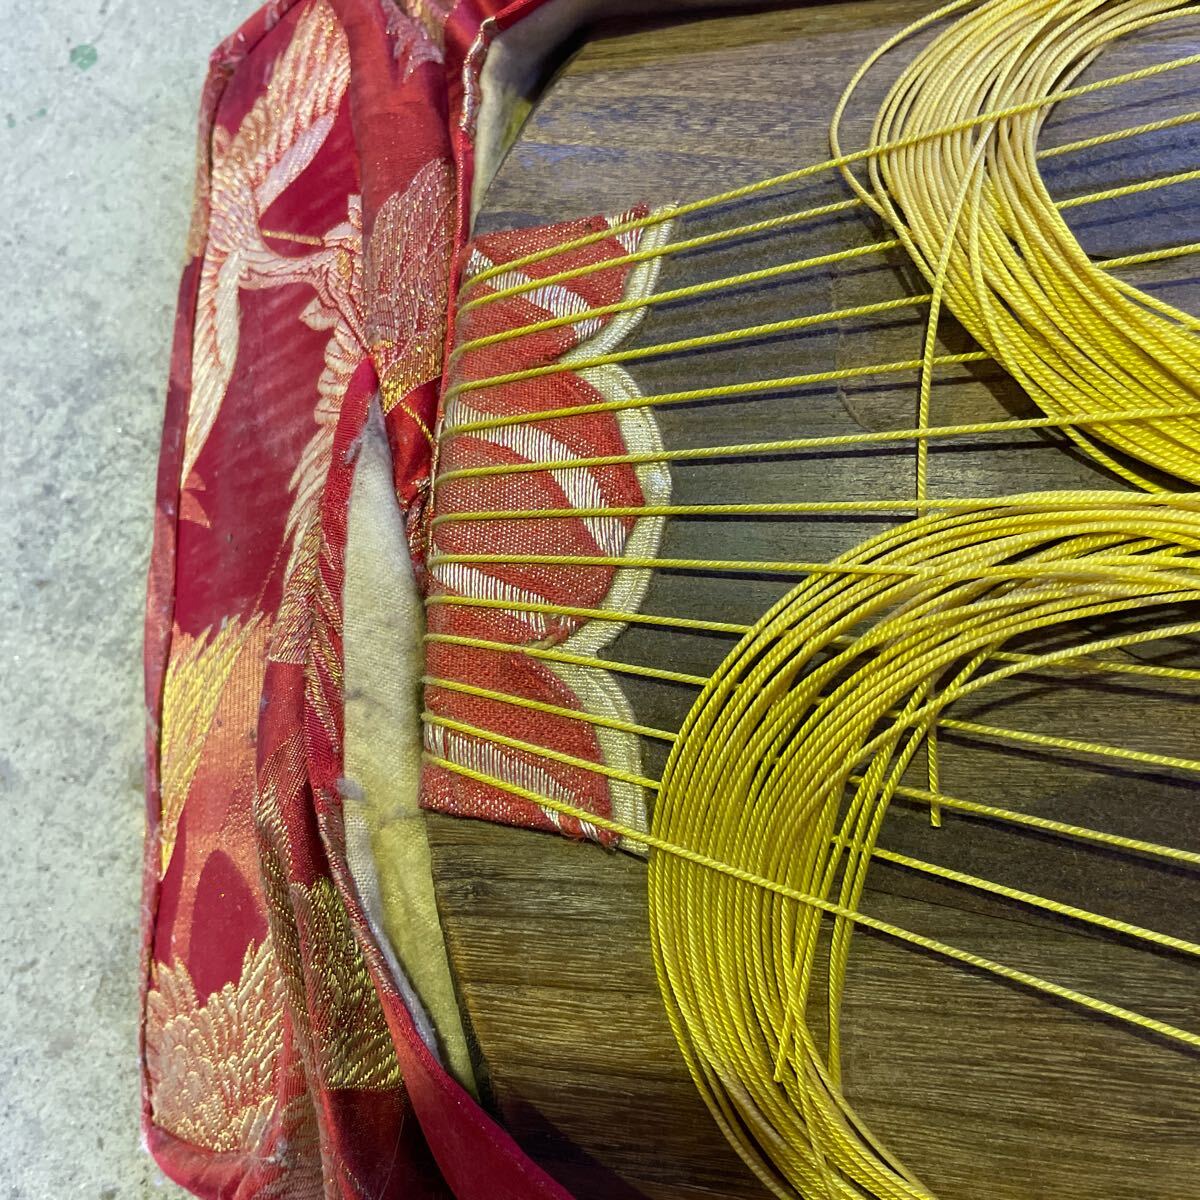  кото ( сякухати пакет ) традиционные японские музыкальные инструменты кото 13 струна традиционное искусство традиция музыкальные инструменты подробности неизвестен 